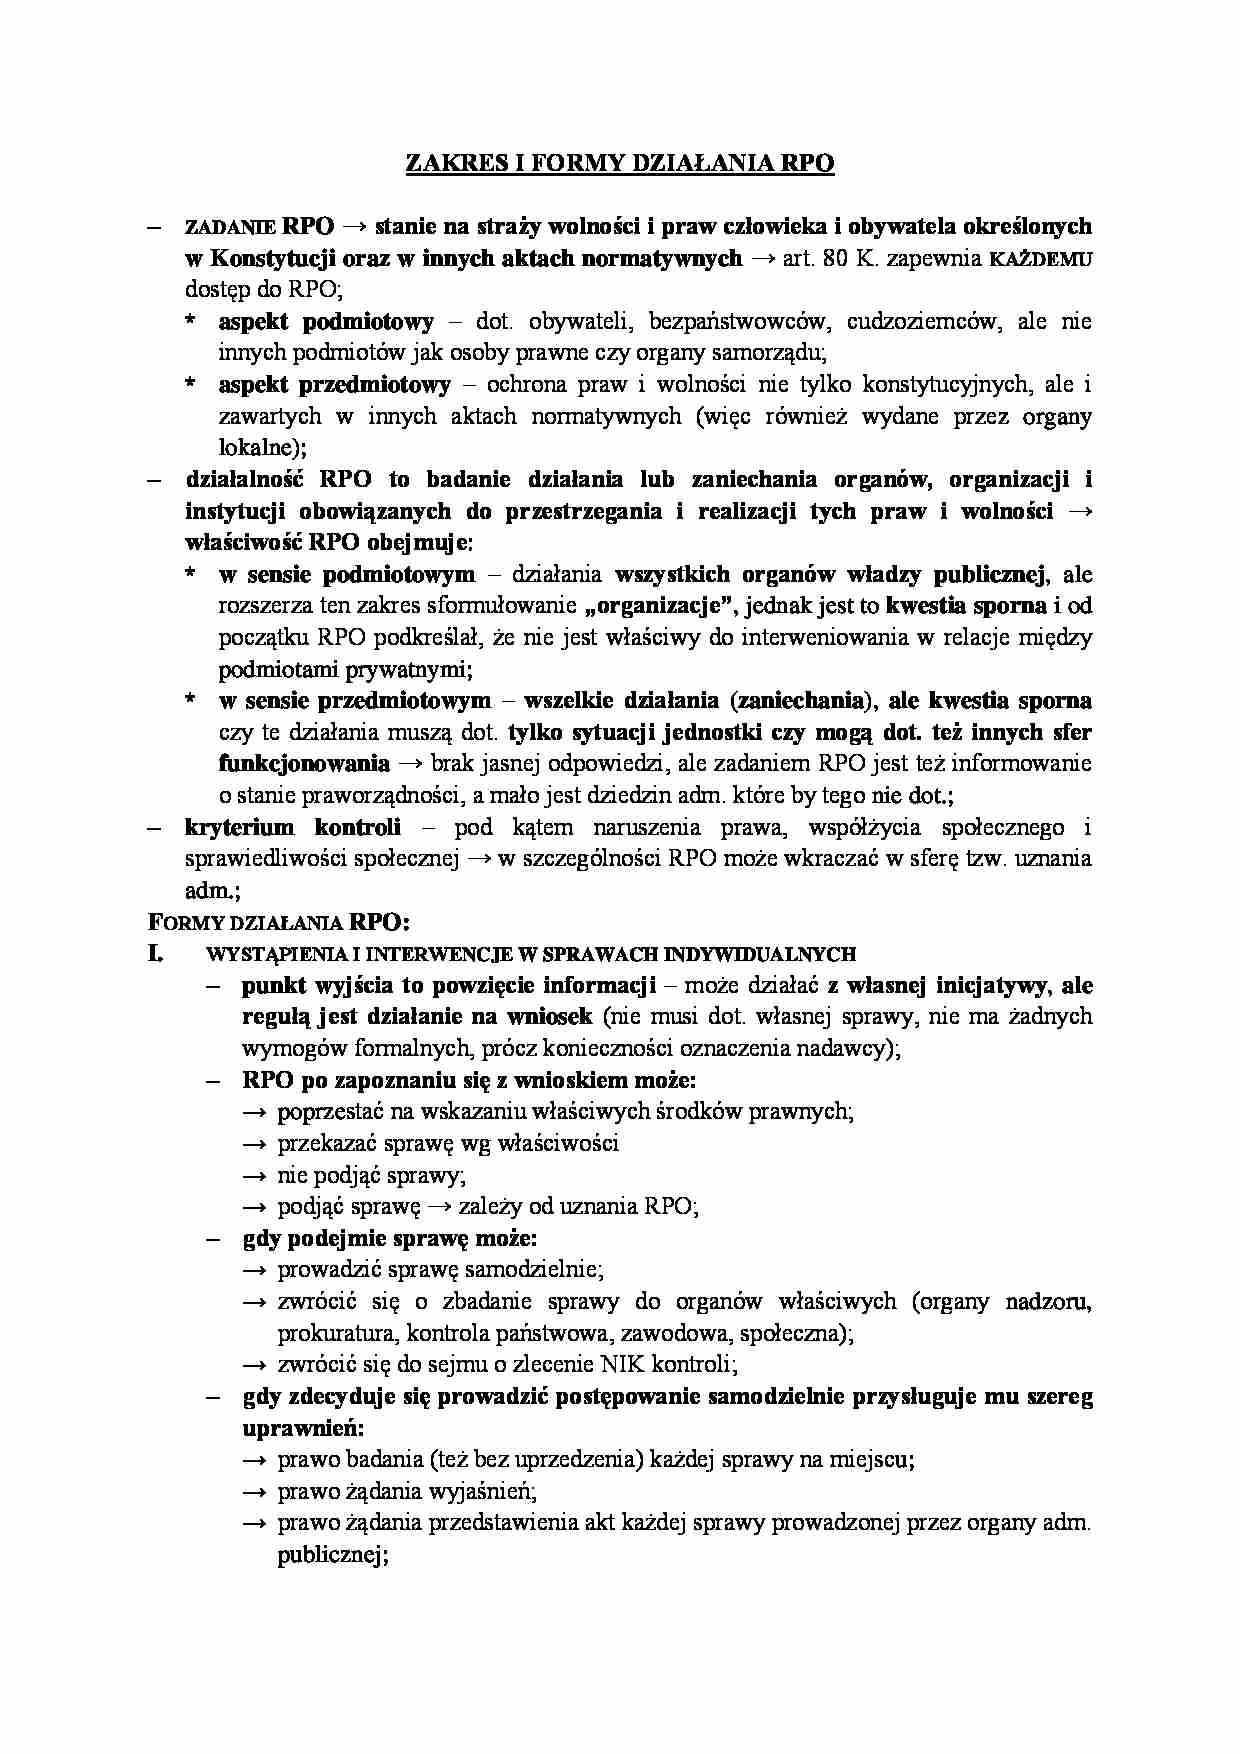 Zakres i formy działania Rzecznika Praw Obywatelskich. - strona 1